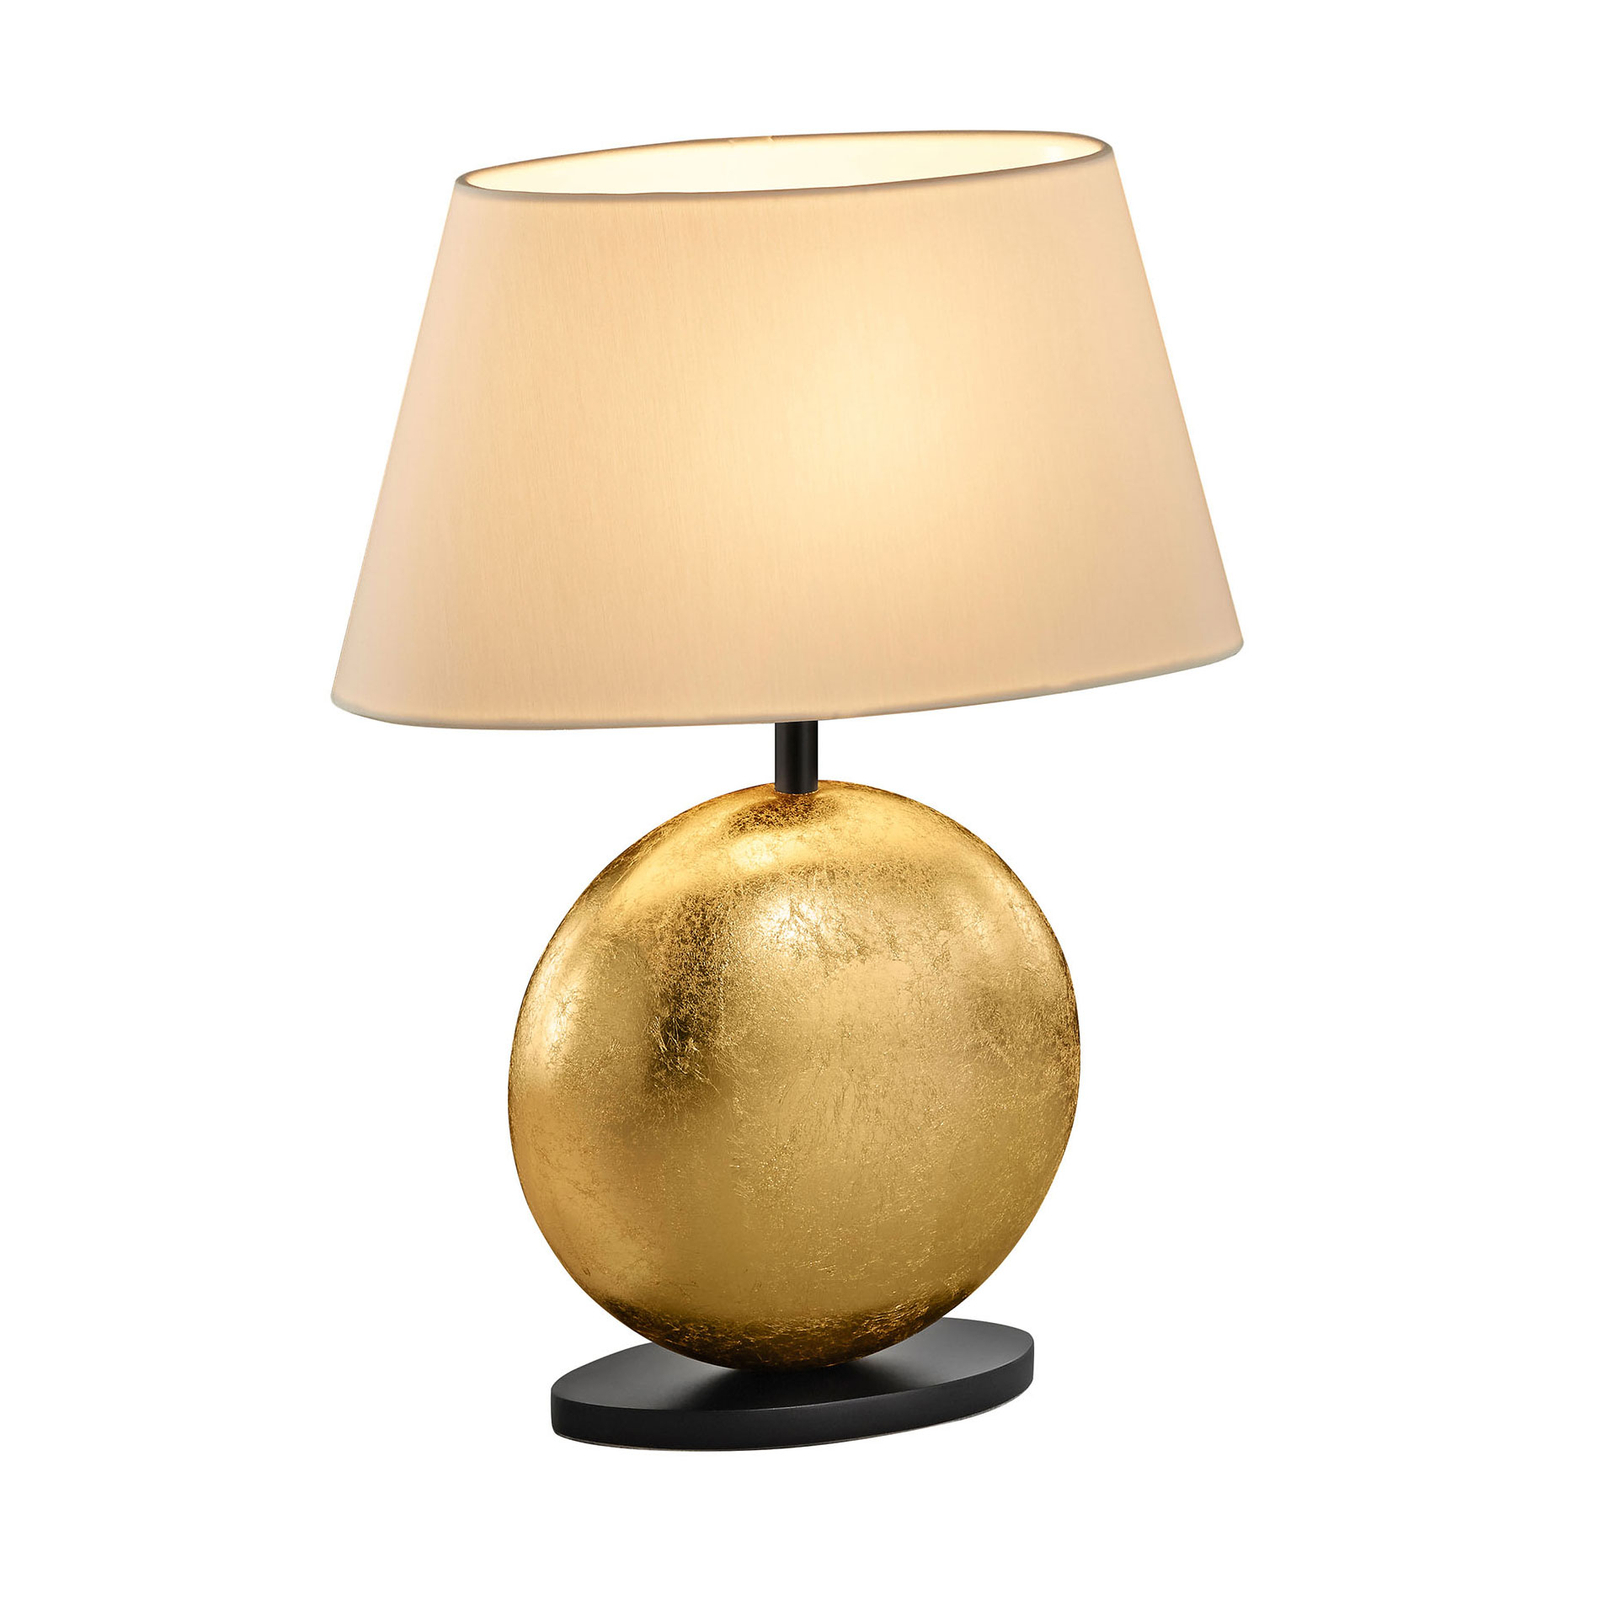 BANKAMP Mali bordlampe, krem/gull, høyde 41 cm